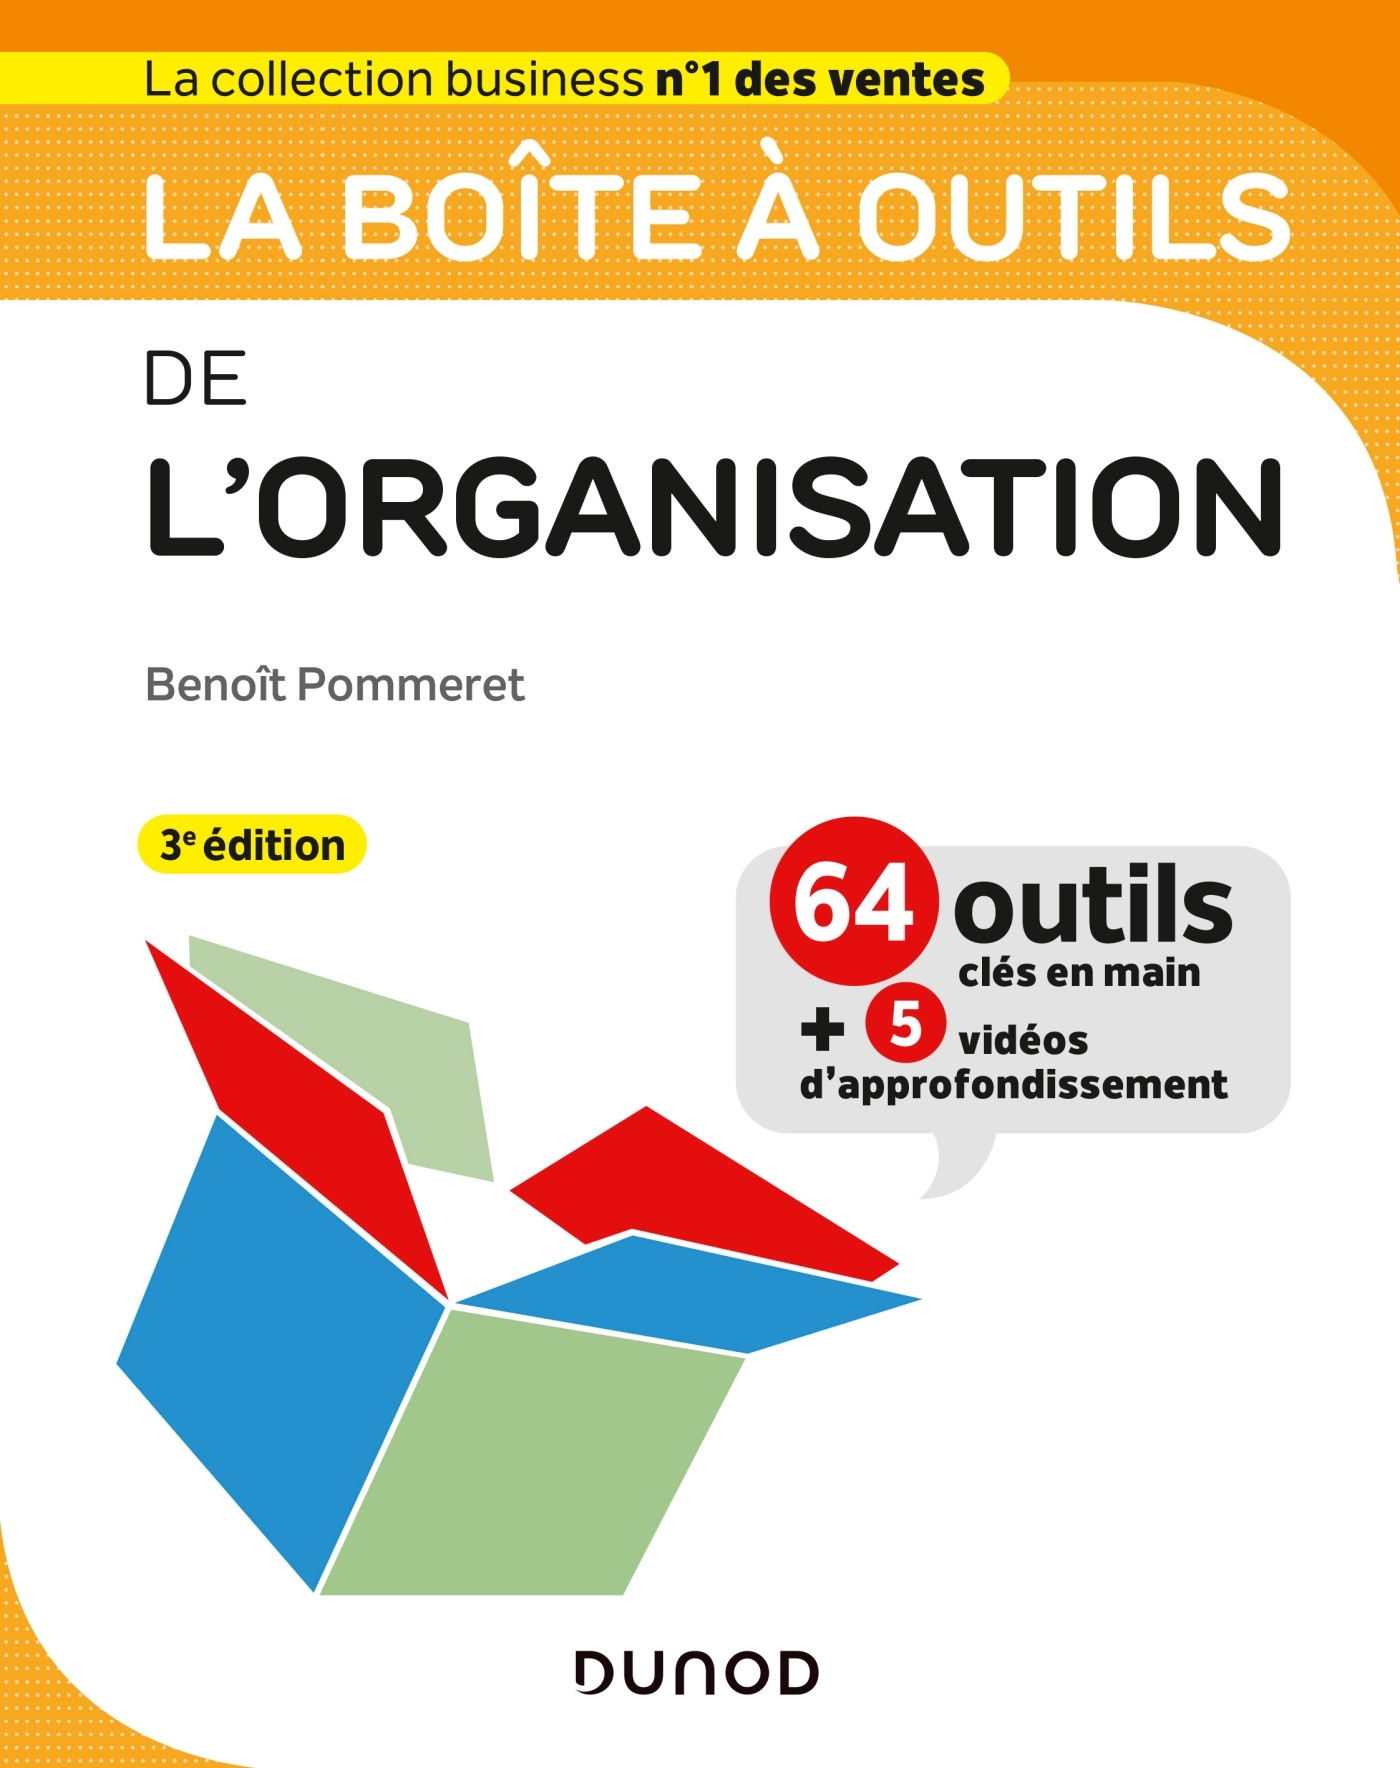 La boîte à outils de l'Organisation - 63 outils & méthodes - Avec 5 vidéos  d'approfondissement - Livre et ebook Management - Leadership de Benoît  Pommeret - Dunod